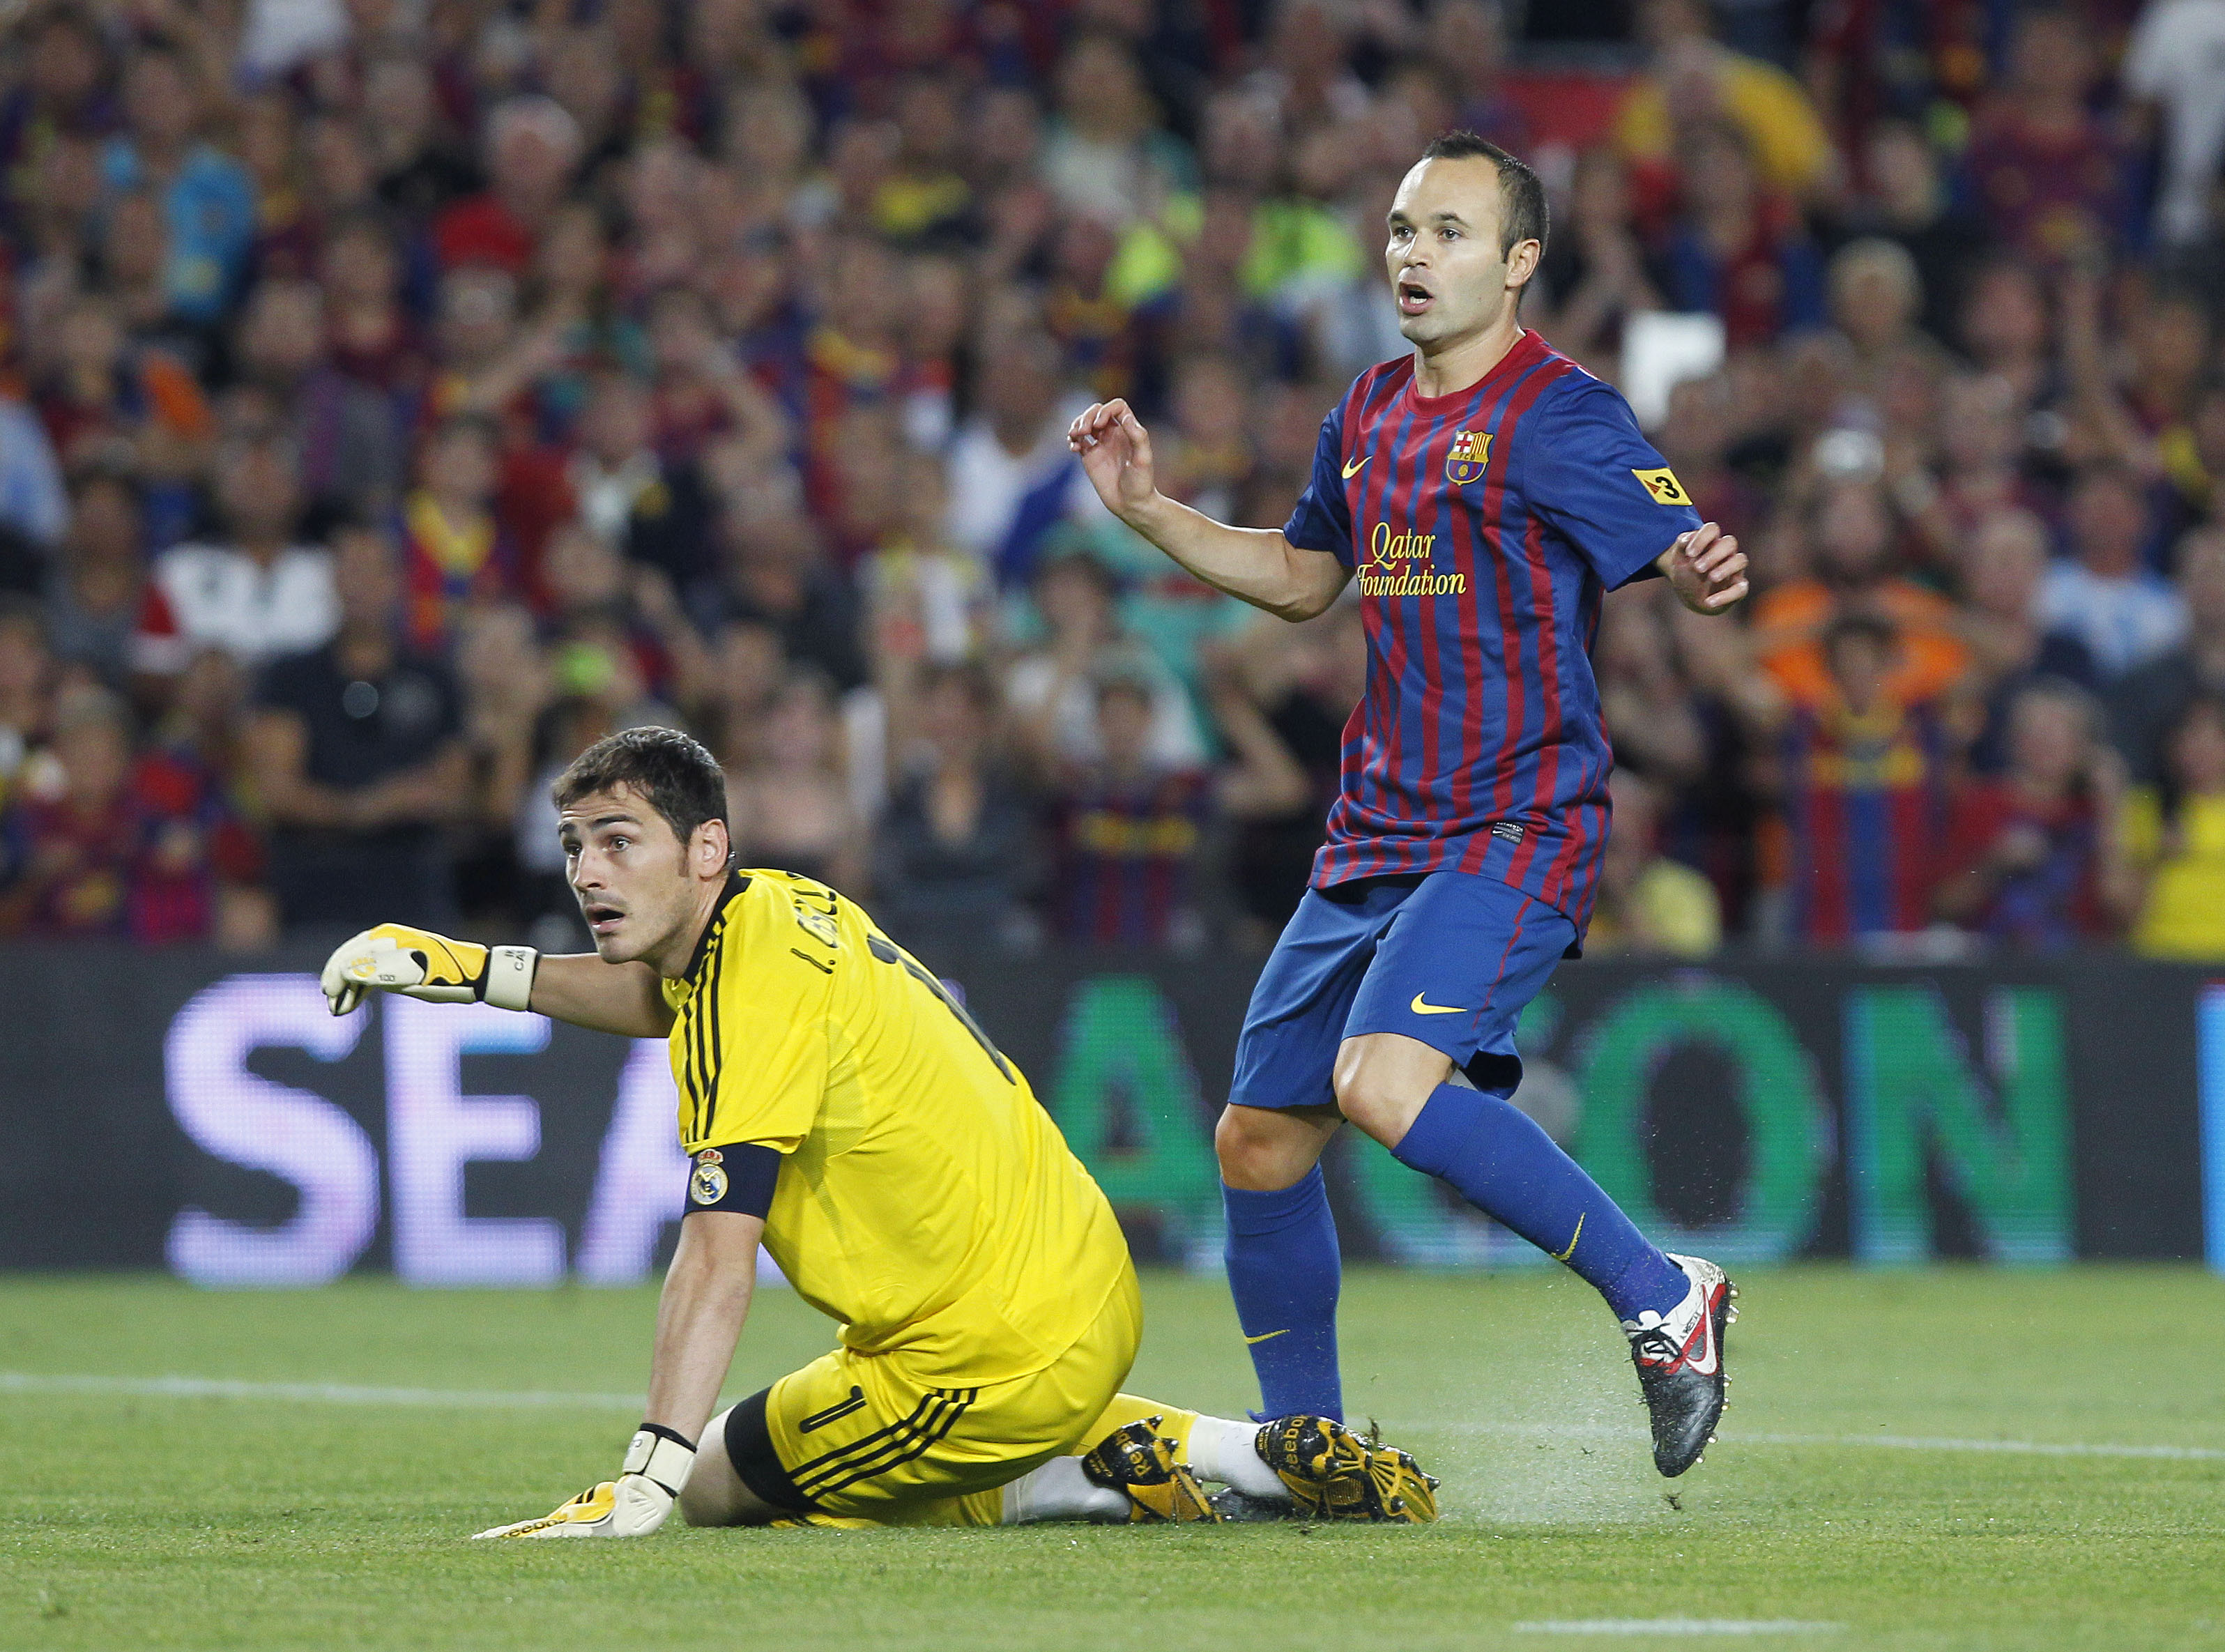 Iniesta inledde målskyttet efter en genial passning av, vem annars, Messi.